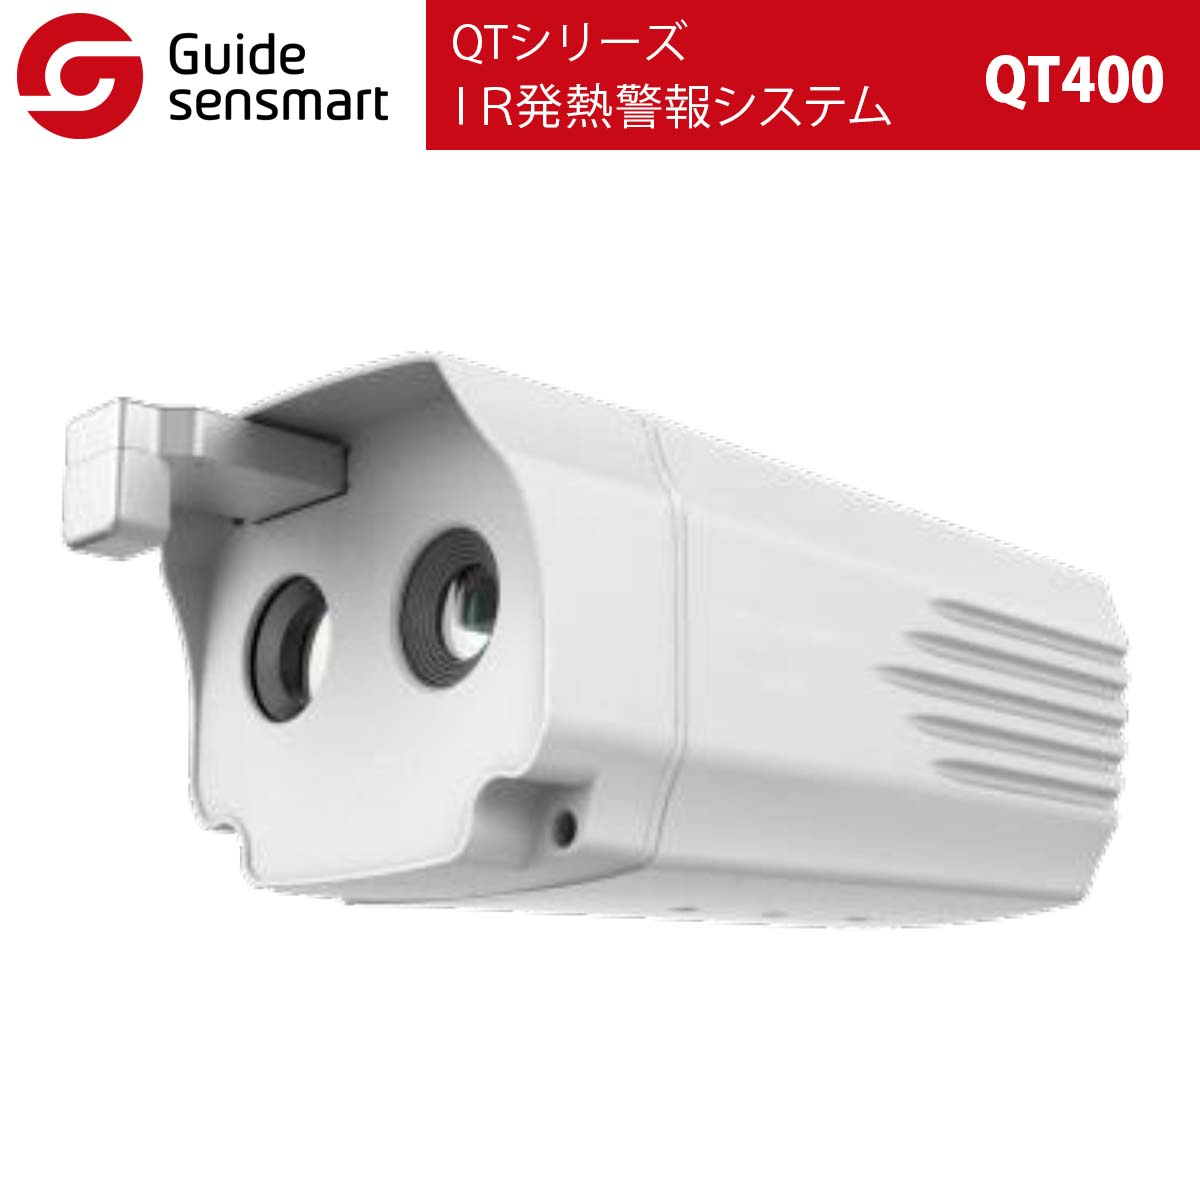 Guide sensmart IR発熱警報システム QT400（QTシリーズ） サーマルカメラ タイムテクノロジー公式ショップ